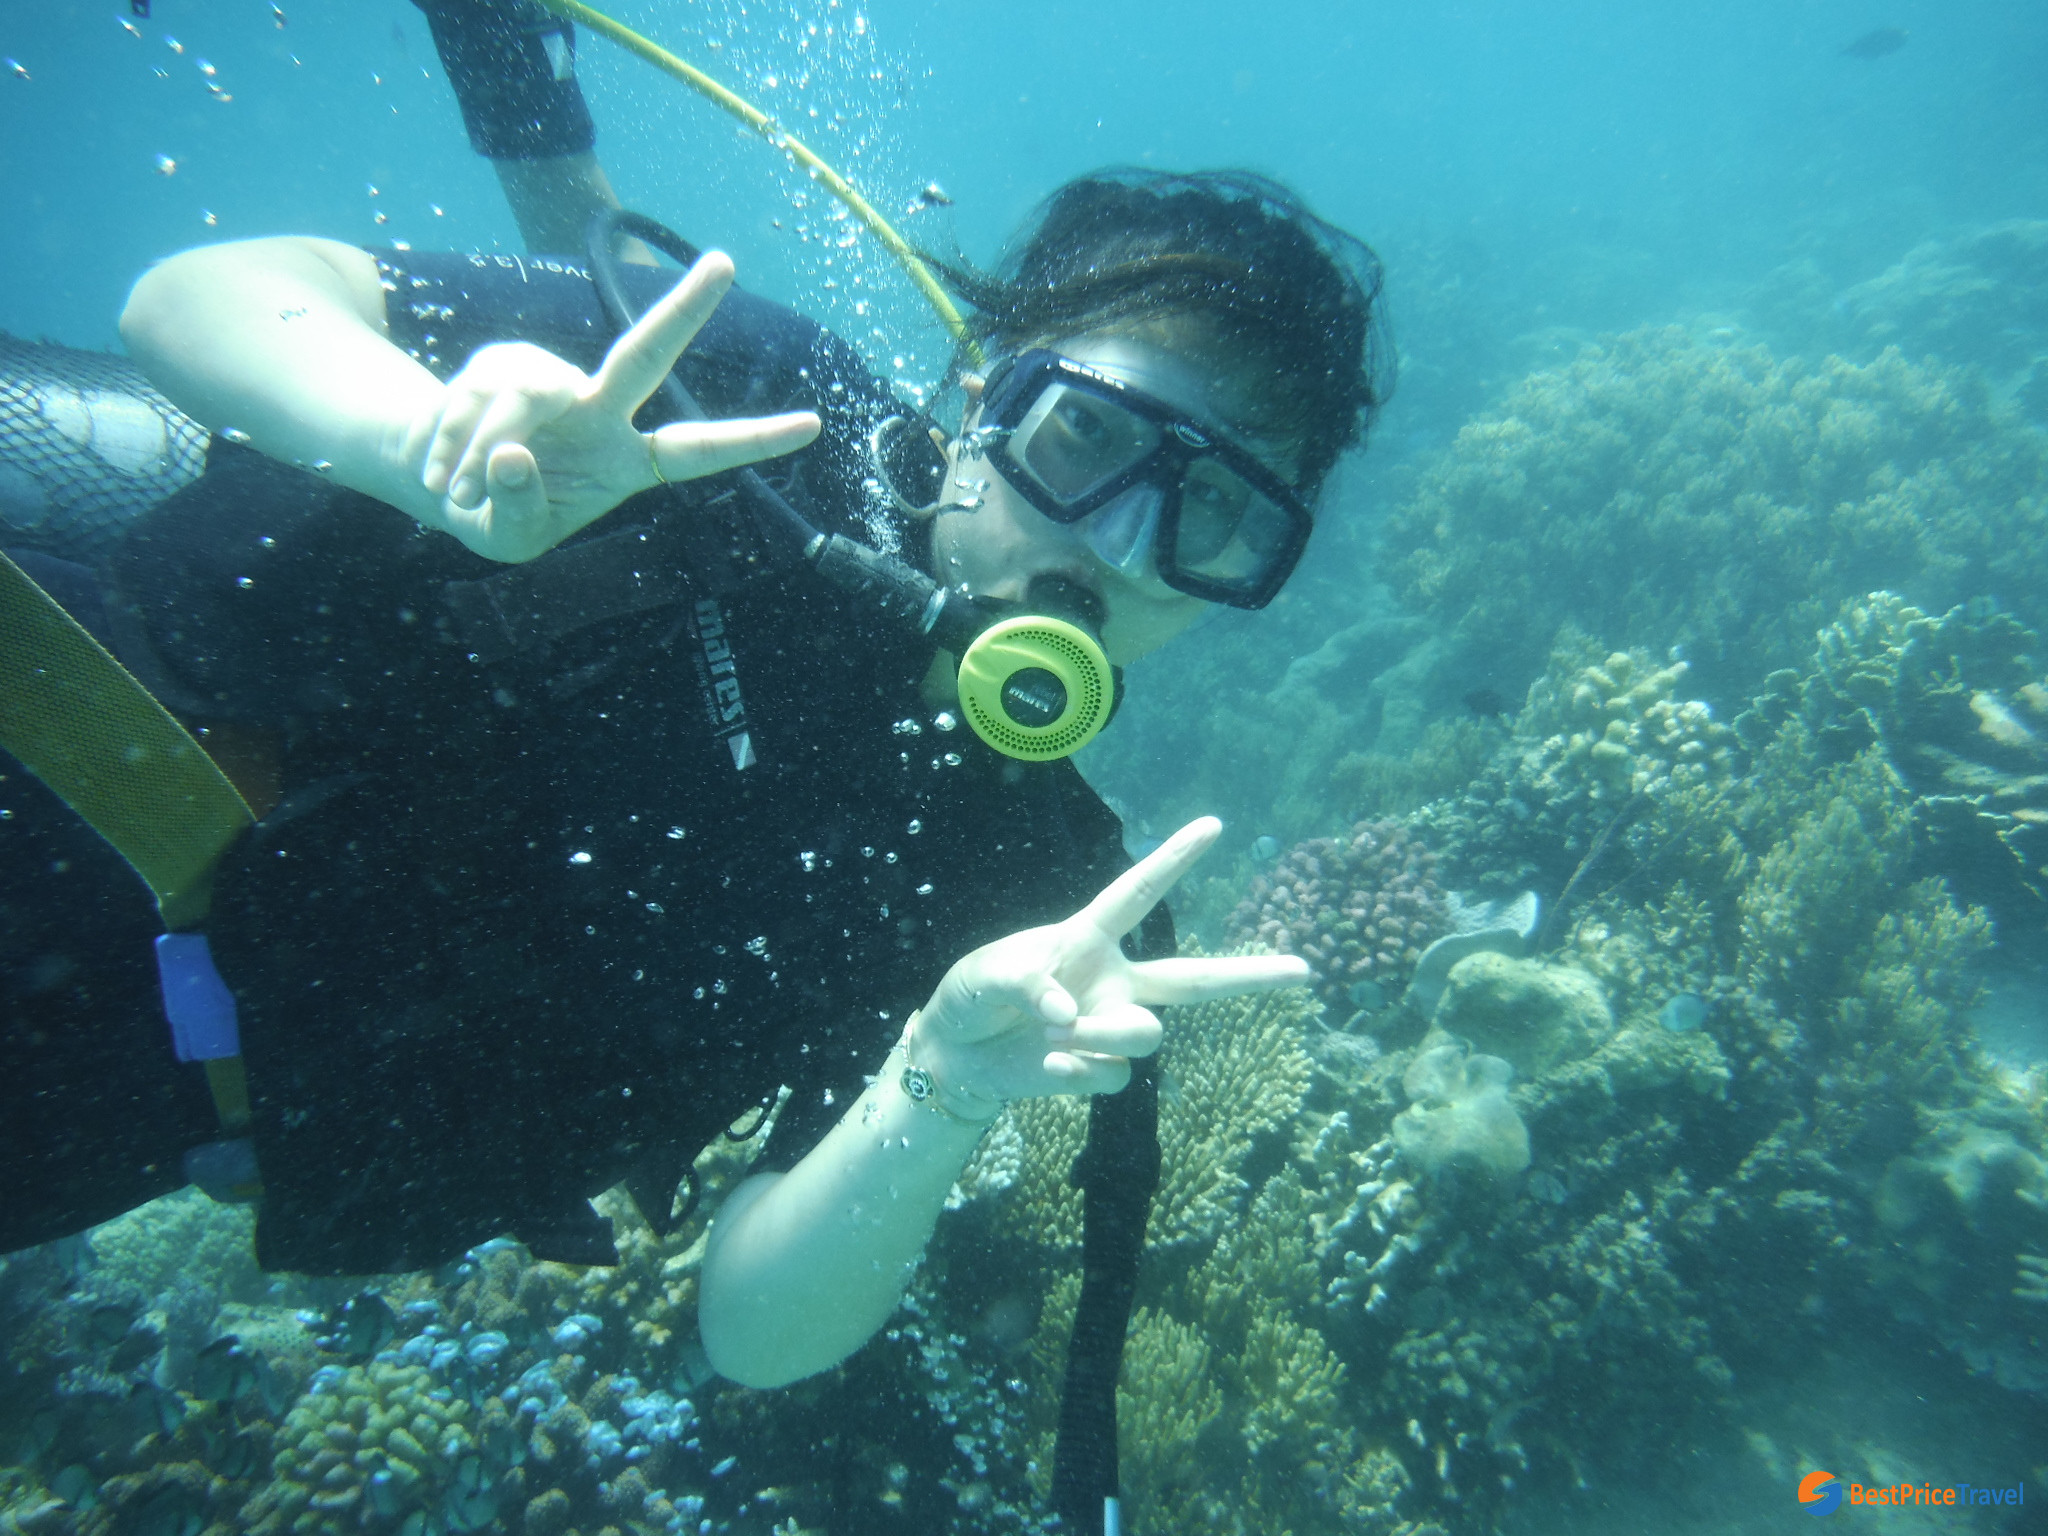 Vietnam adventure activities - diving in Nha Trang